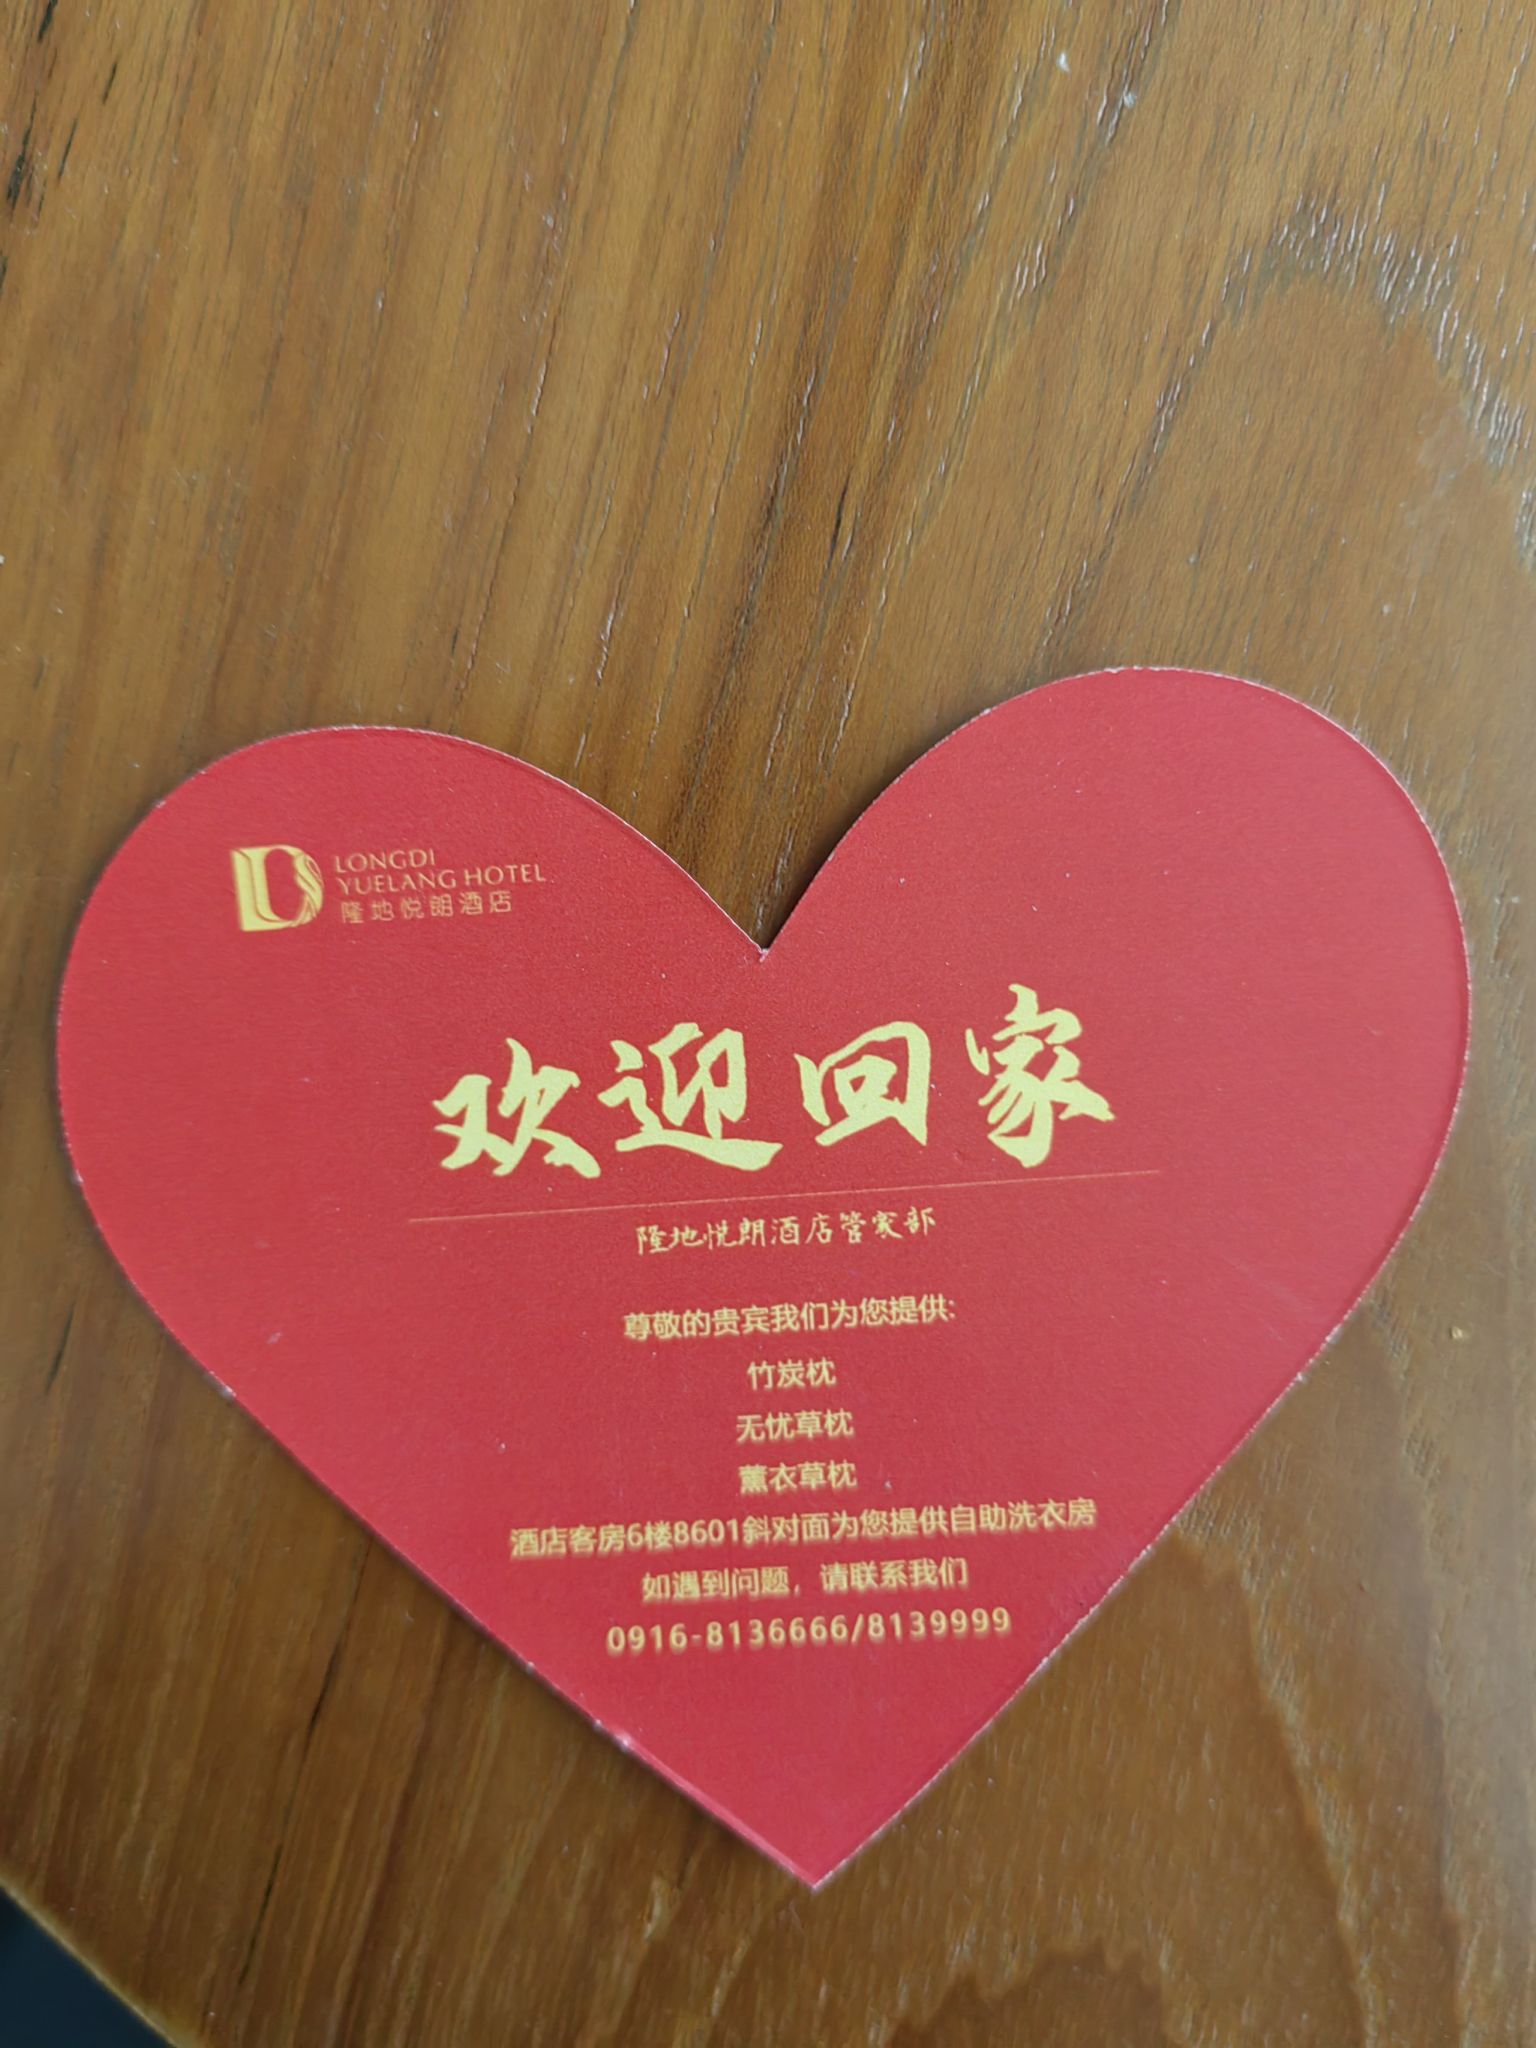 第二次到汉中，再次选择住在隆地悦朗酒店，入住服务员就在醒目位置放置了“欢迎回家”爱心卡片，晚上到三楼